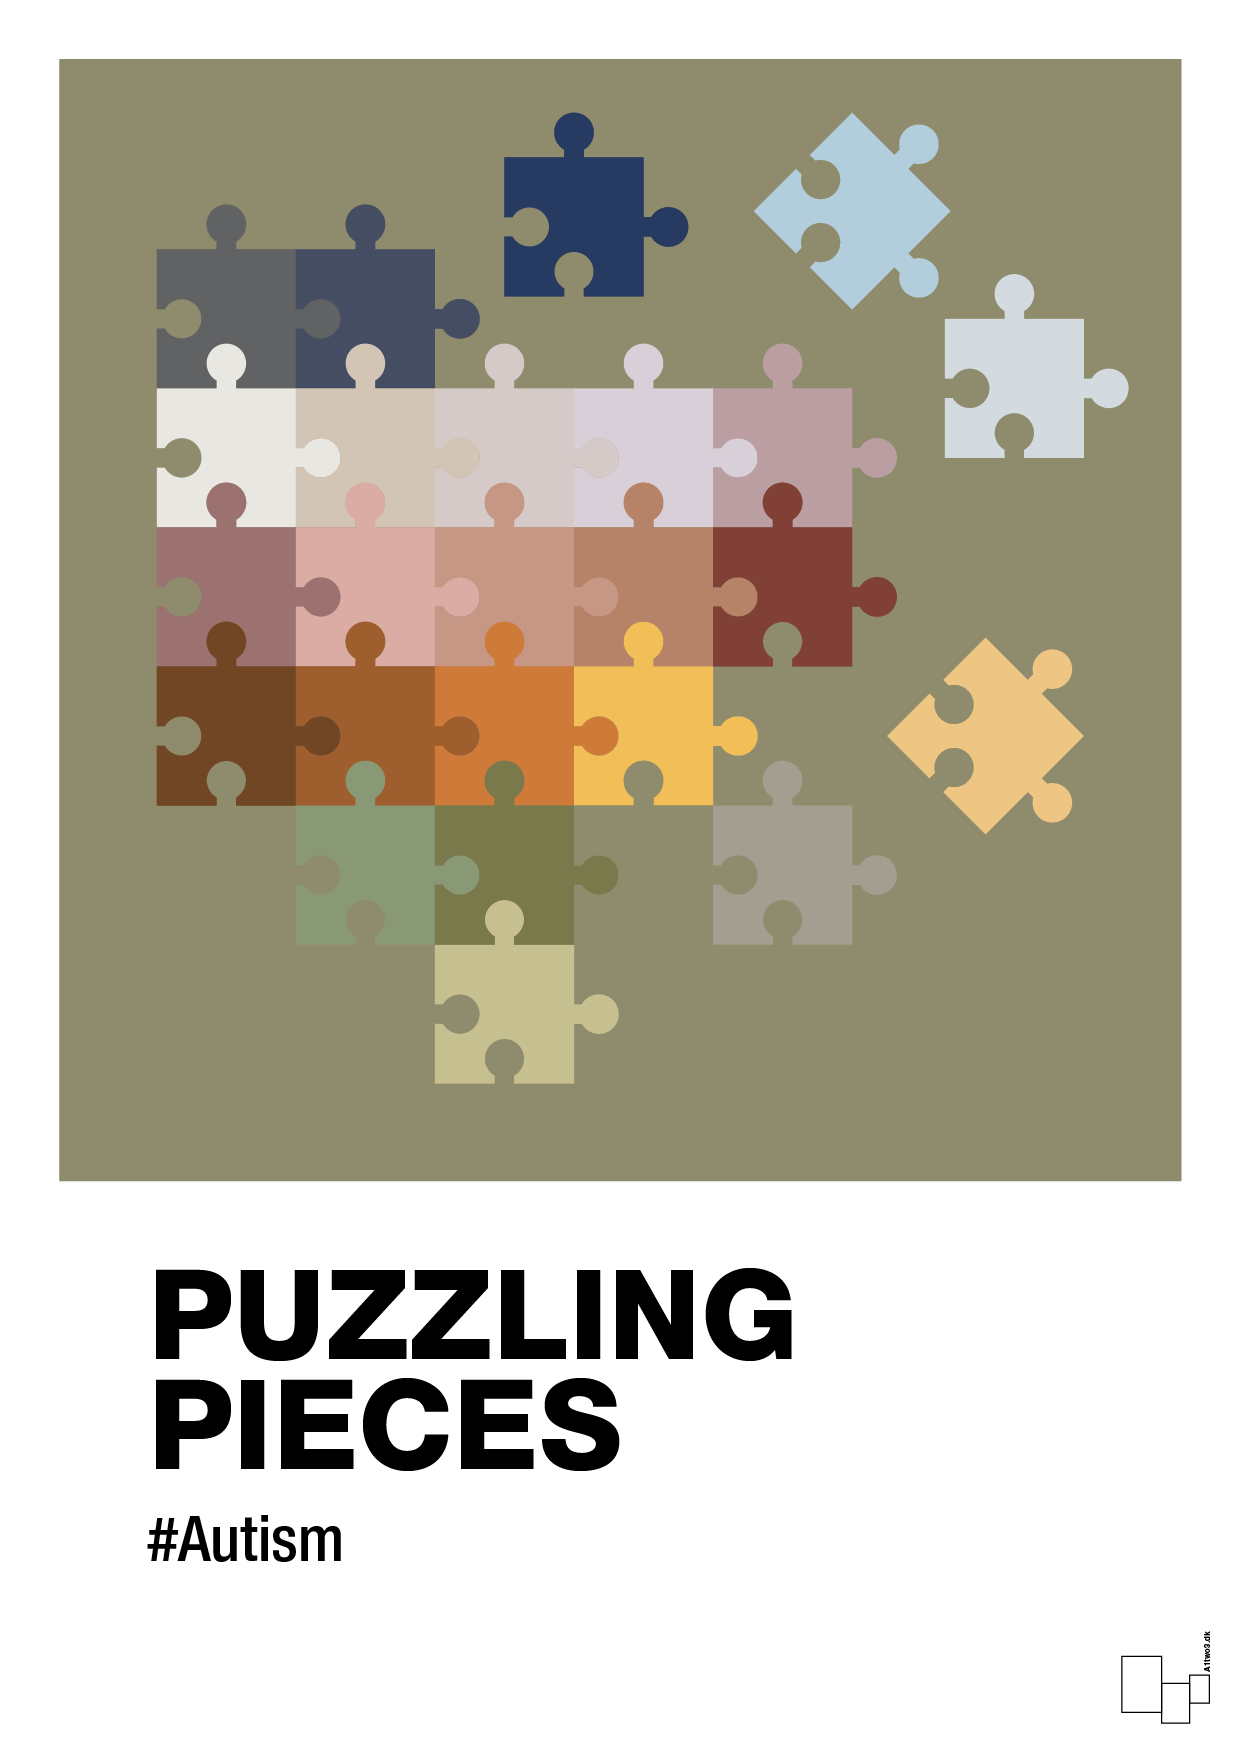 puzzling pieces - Plakat med Samfund i Misty Forrest